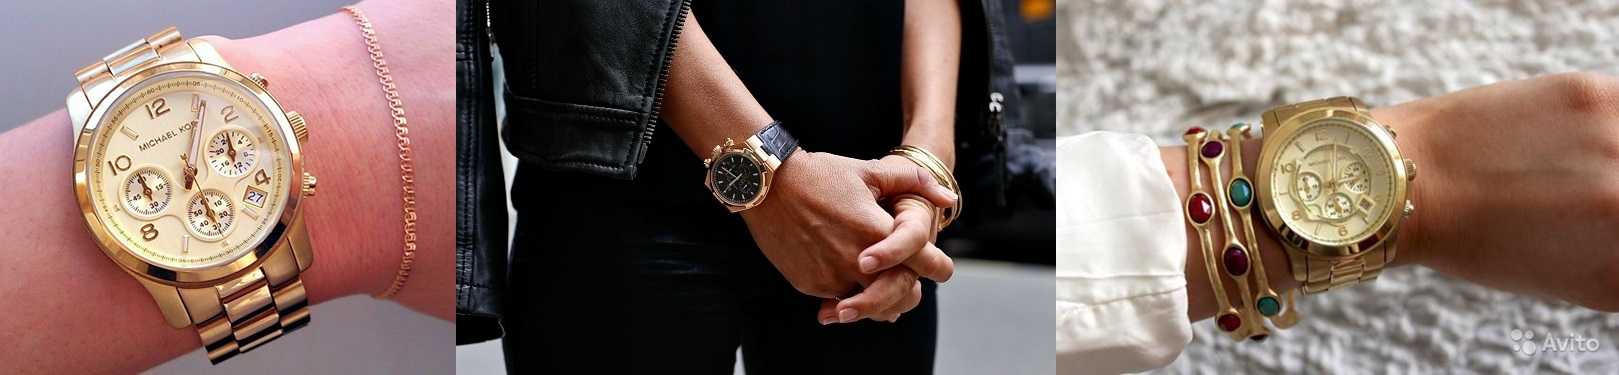 На какой руке носят часы?